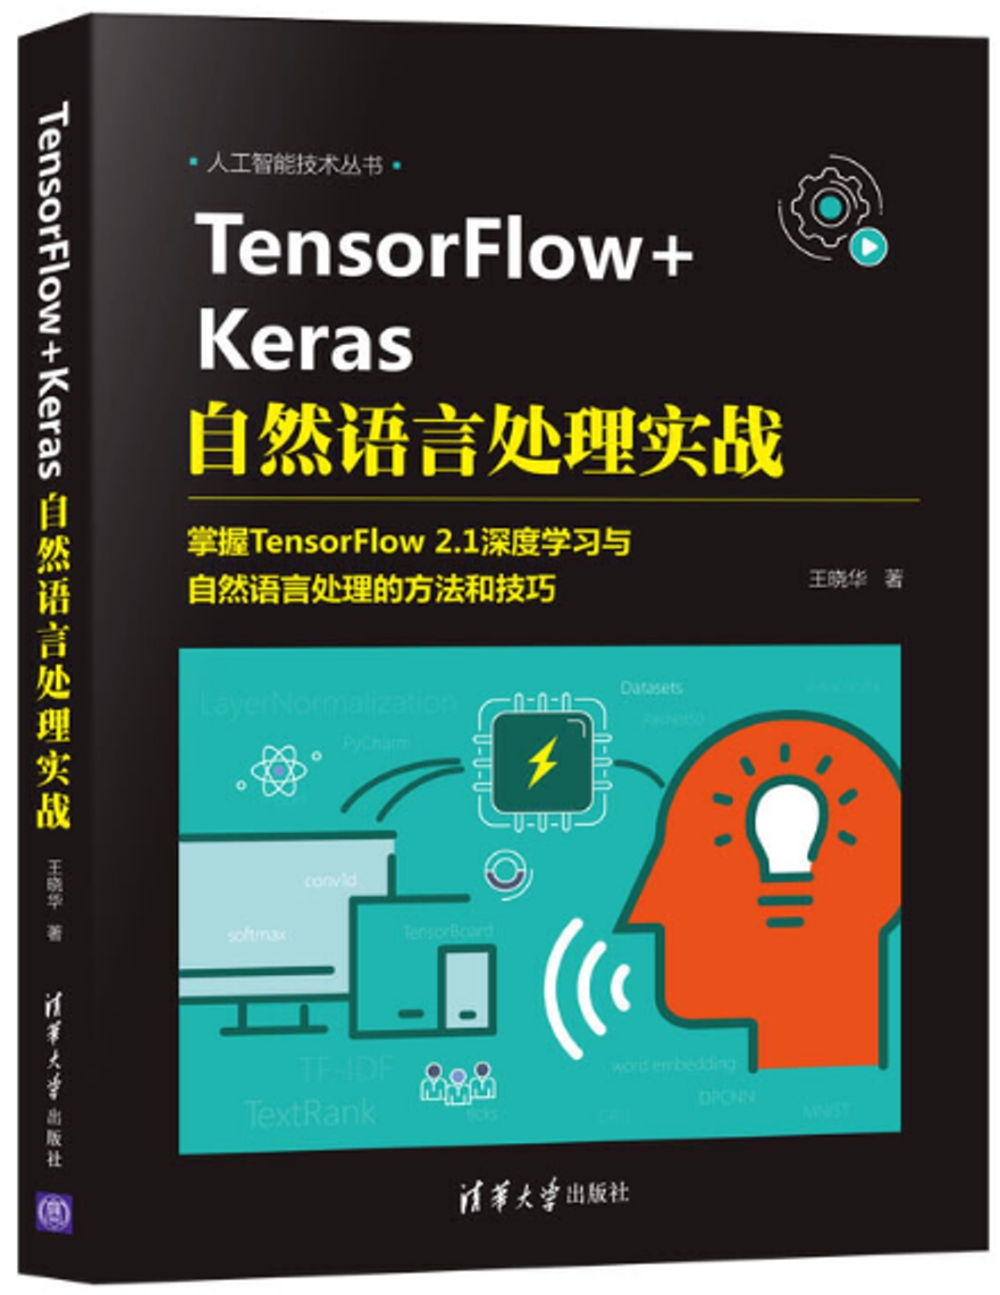 TensorFlow+Keras自然語言處理實戰